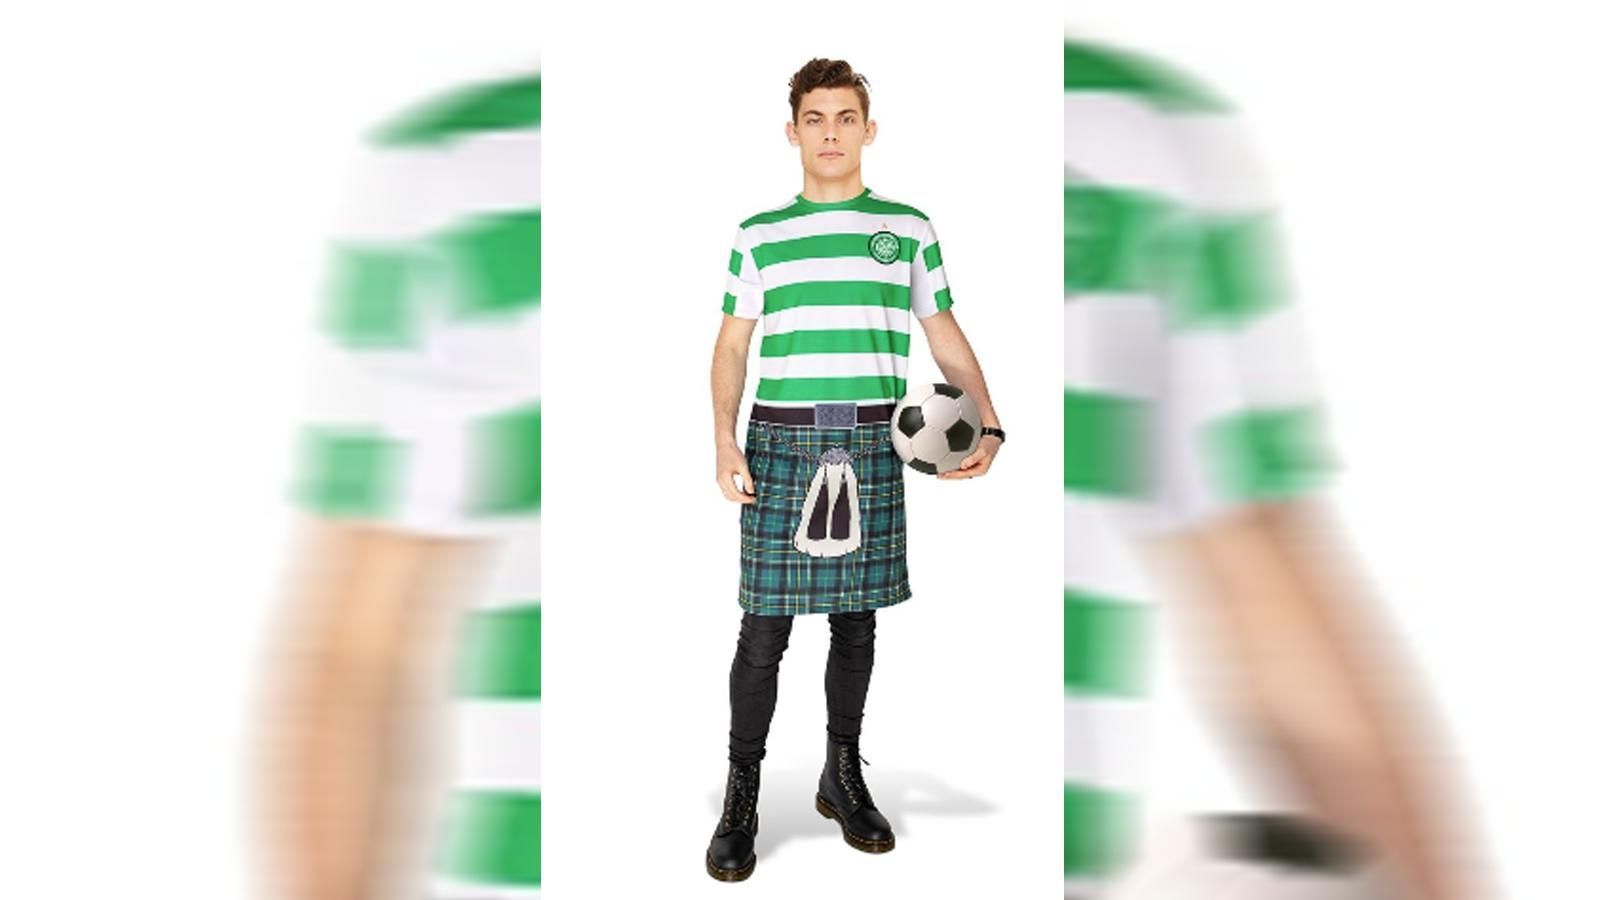 
                <strong>Celtic Glasgow</strong><br>
                Celtic Glasgow hat ein neues Outfit für die kommende Saison 2019/20 präsentiert! Neben dem "normalen" Trikot hat sich der schottische Meister eine Besonderheit einfallen lassen. Im Online-Store der Schotten gibt es ab jetzt einen traditionellen Kilt zu kaufen - für nur rund 28 Euro können sich die Celtic-Anhänger mit dem knielangen Rock neu einkleiden.
              